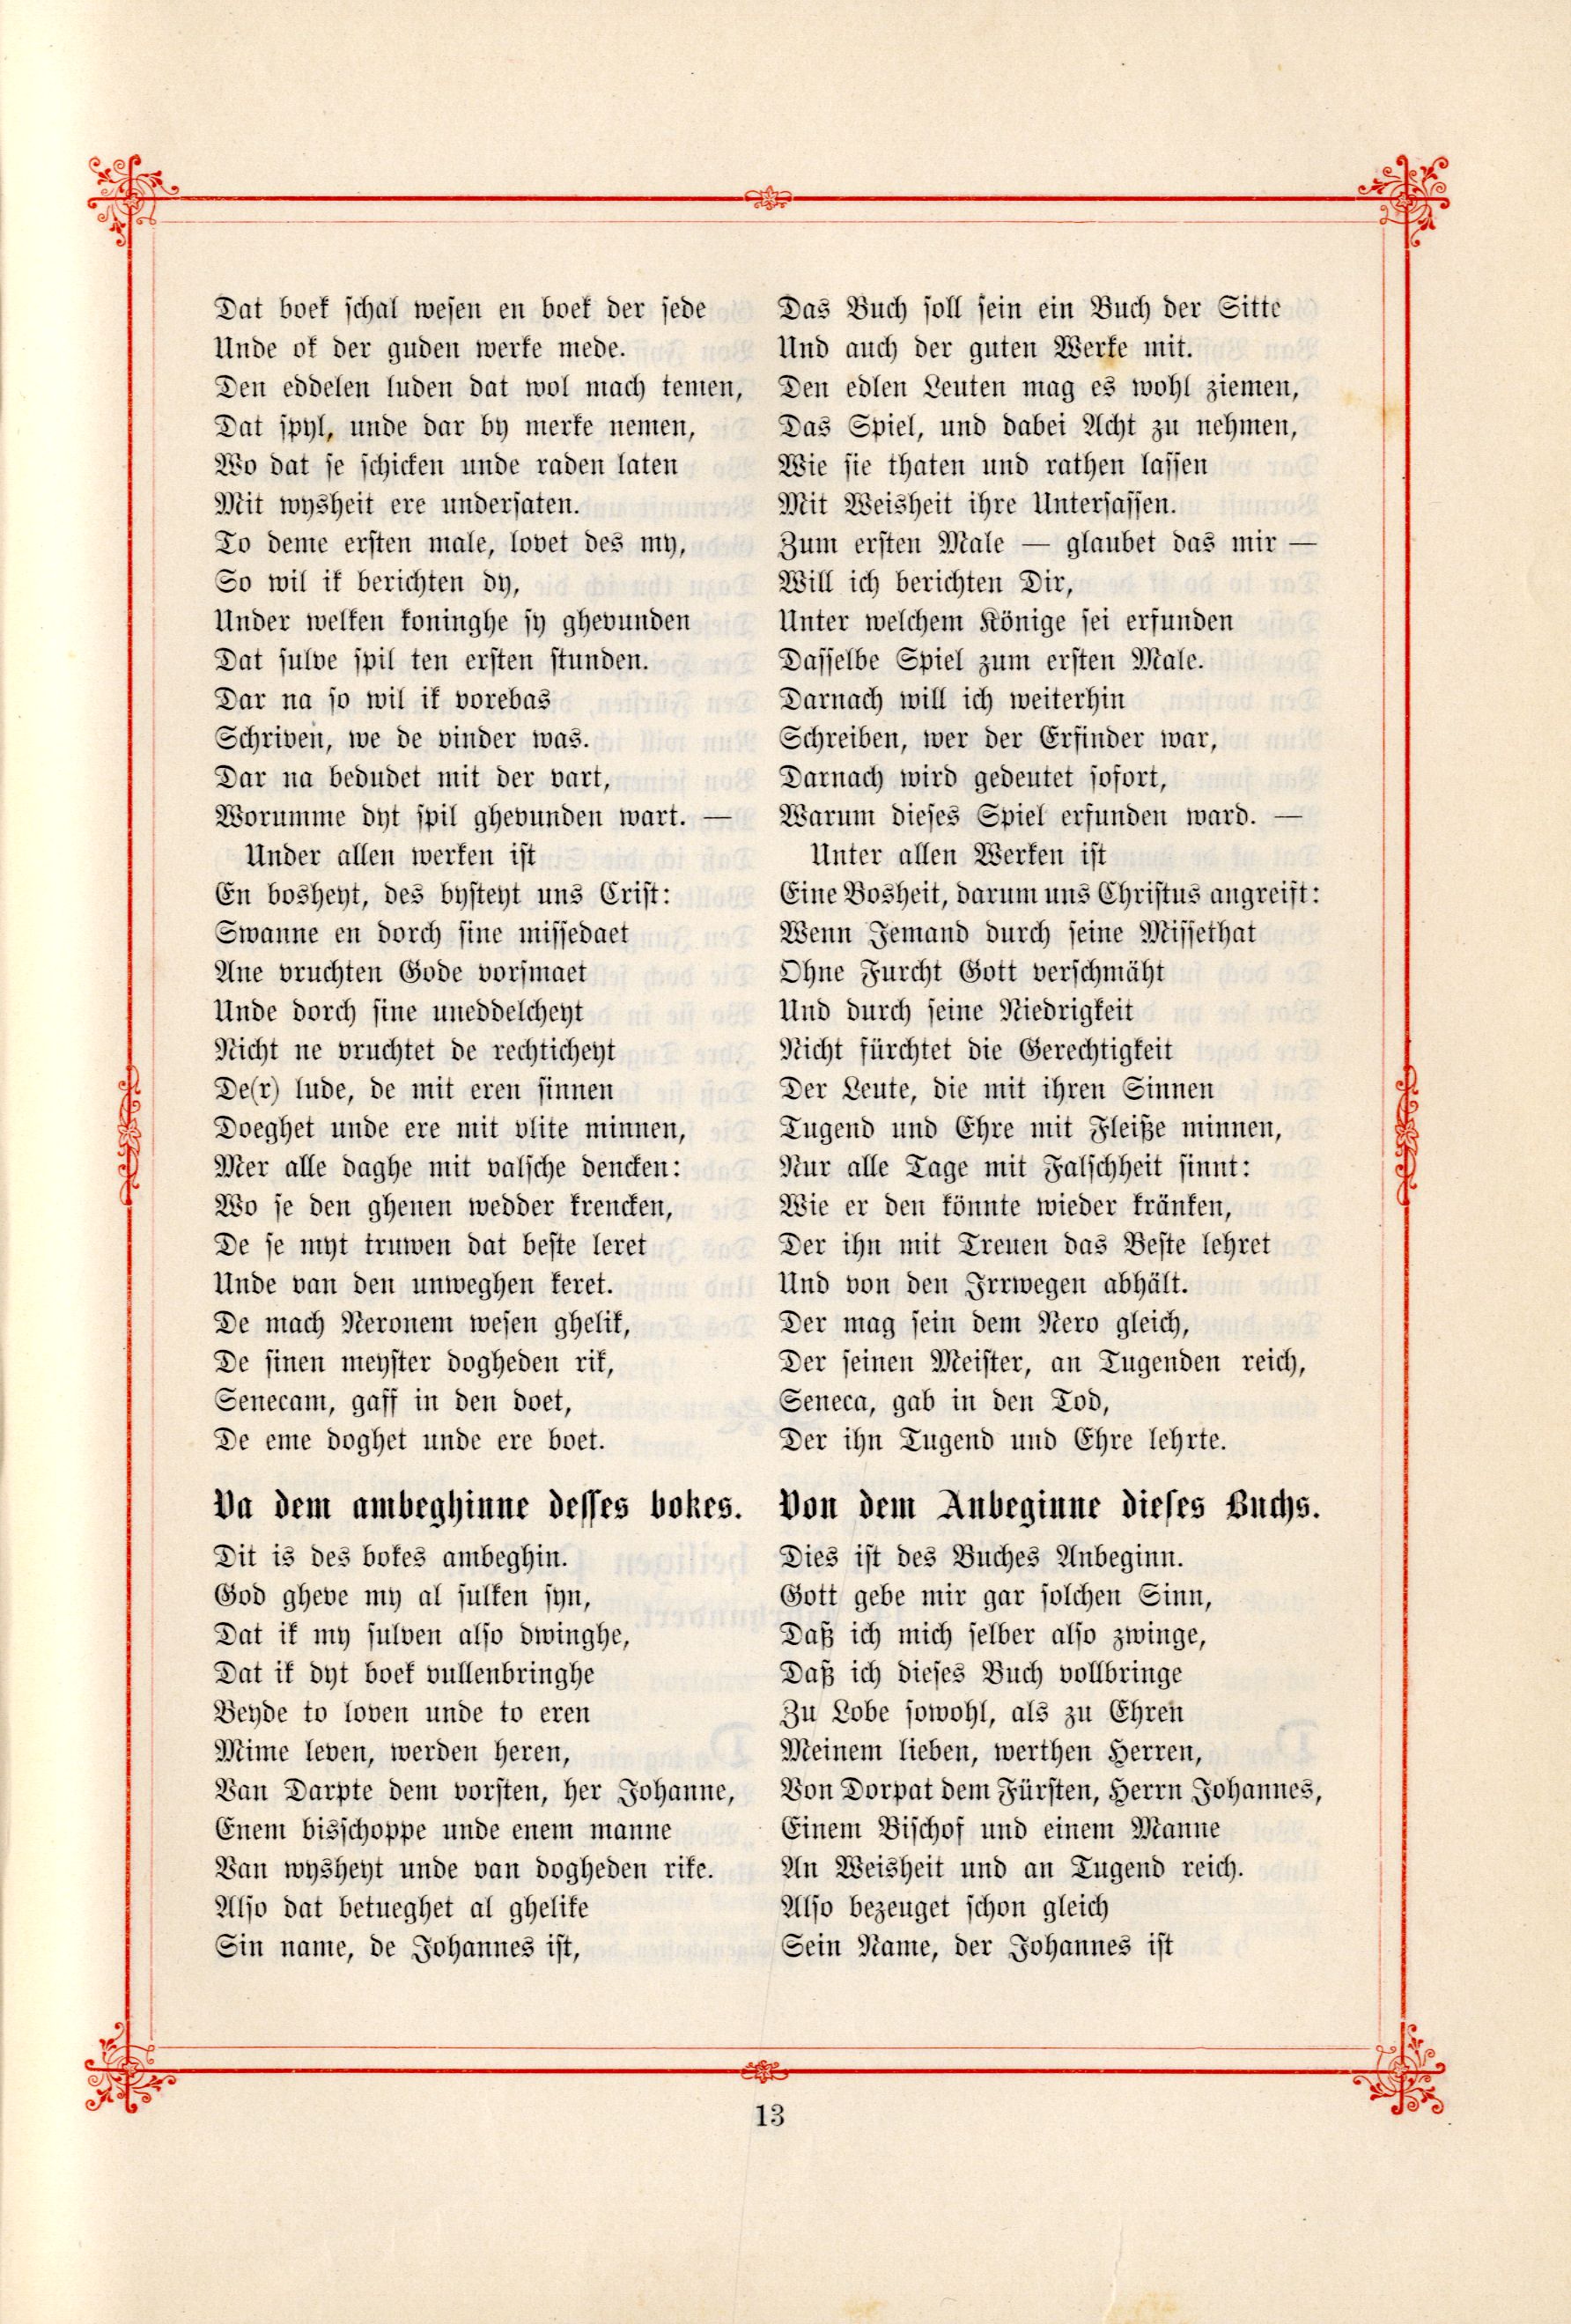 Aus dem Schachbuch (1895) | 2. (13) Main body of text